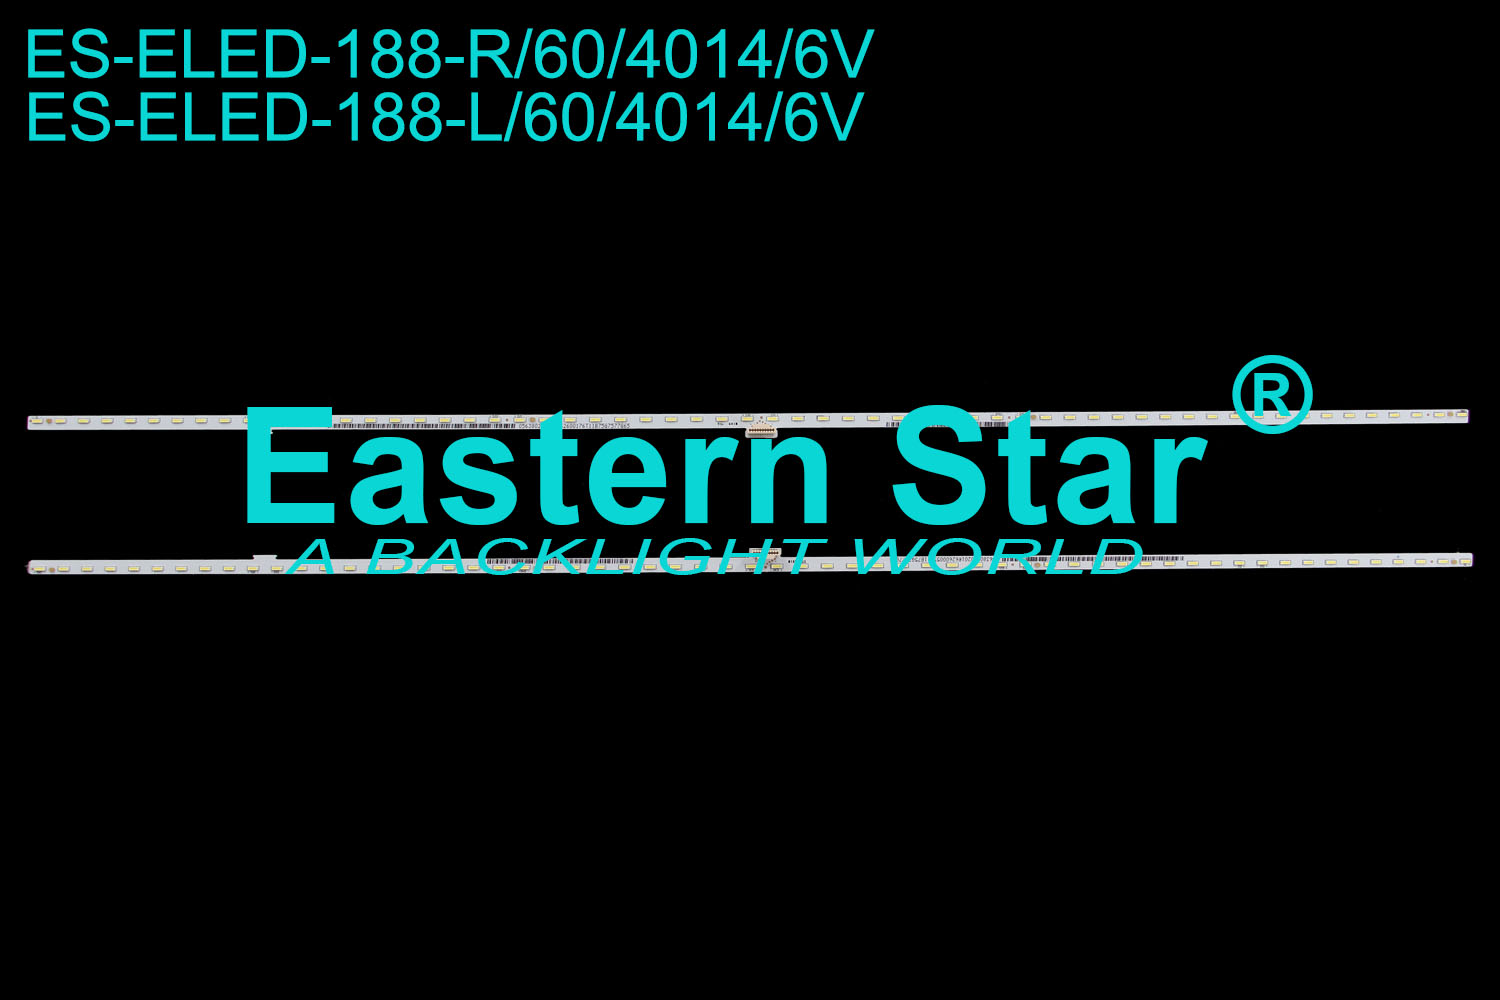 ES-ELED-188 ELED/EDGE TV backlight 55'' Sony KD-55XD5899 056380270201L/R62600176T11B75G7577G65  LED STRIPS(2)